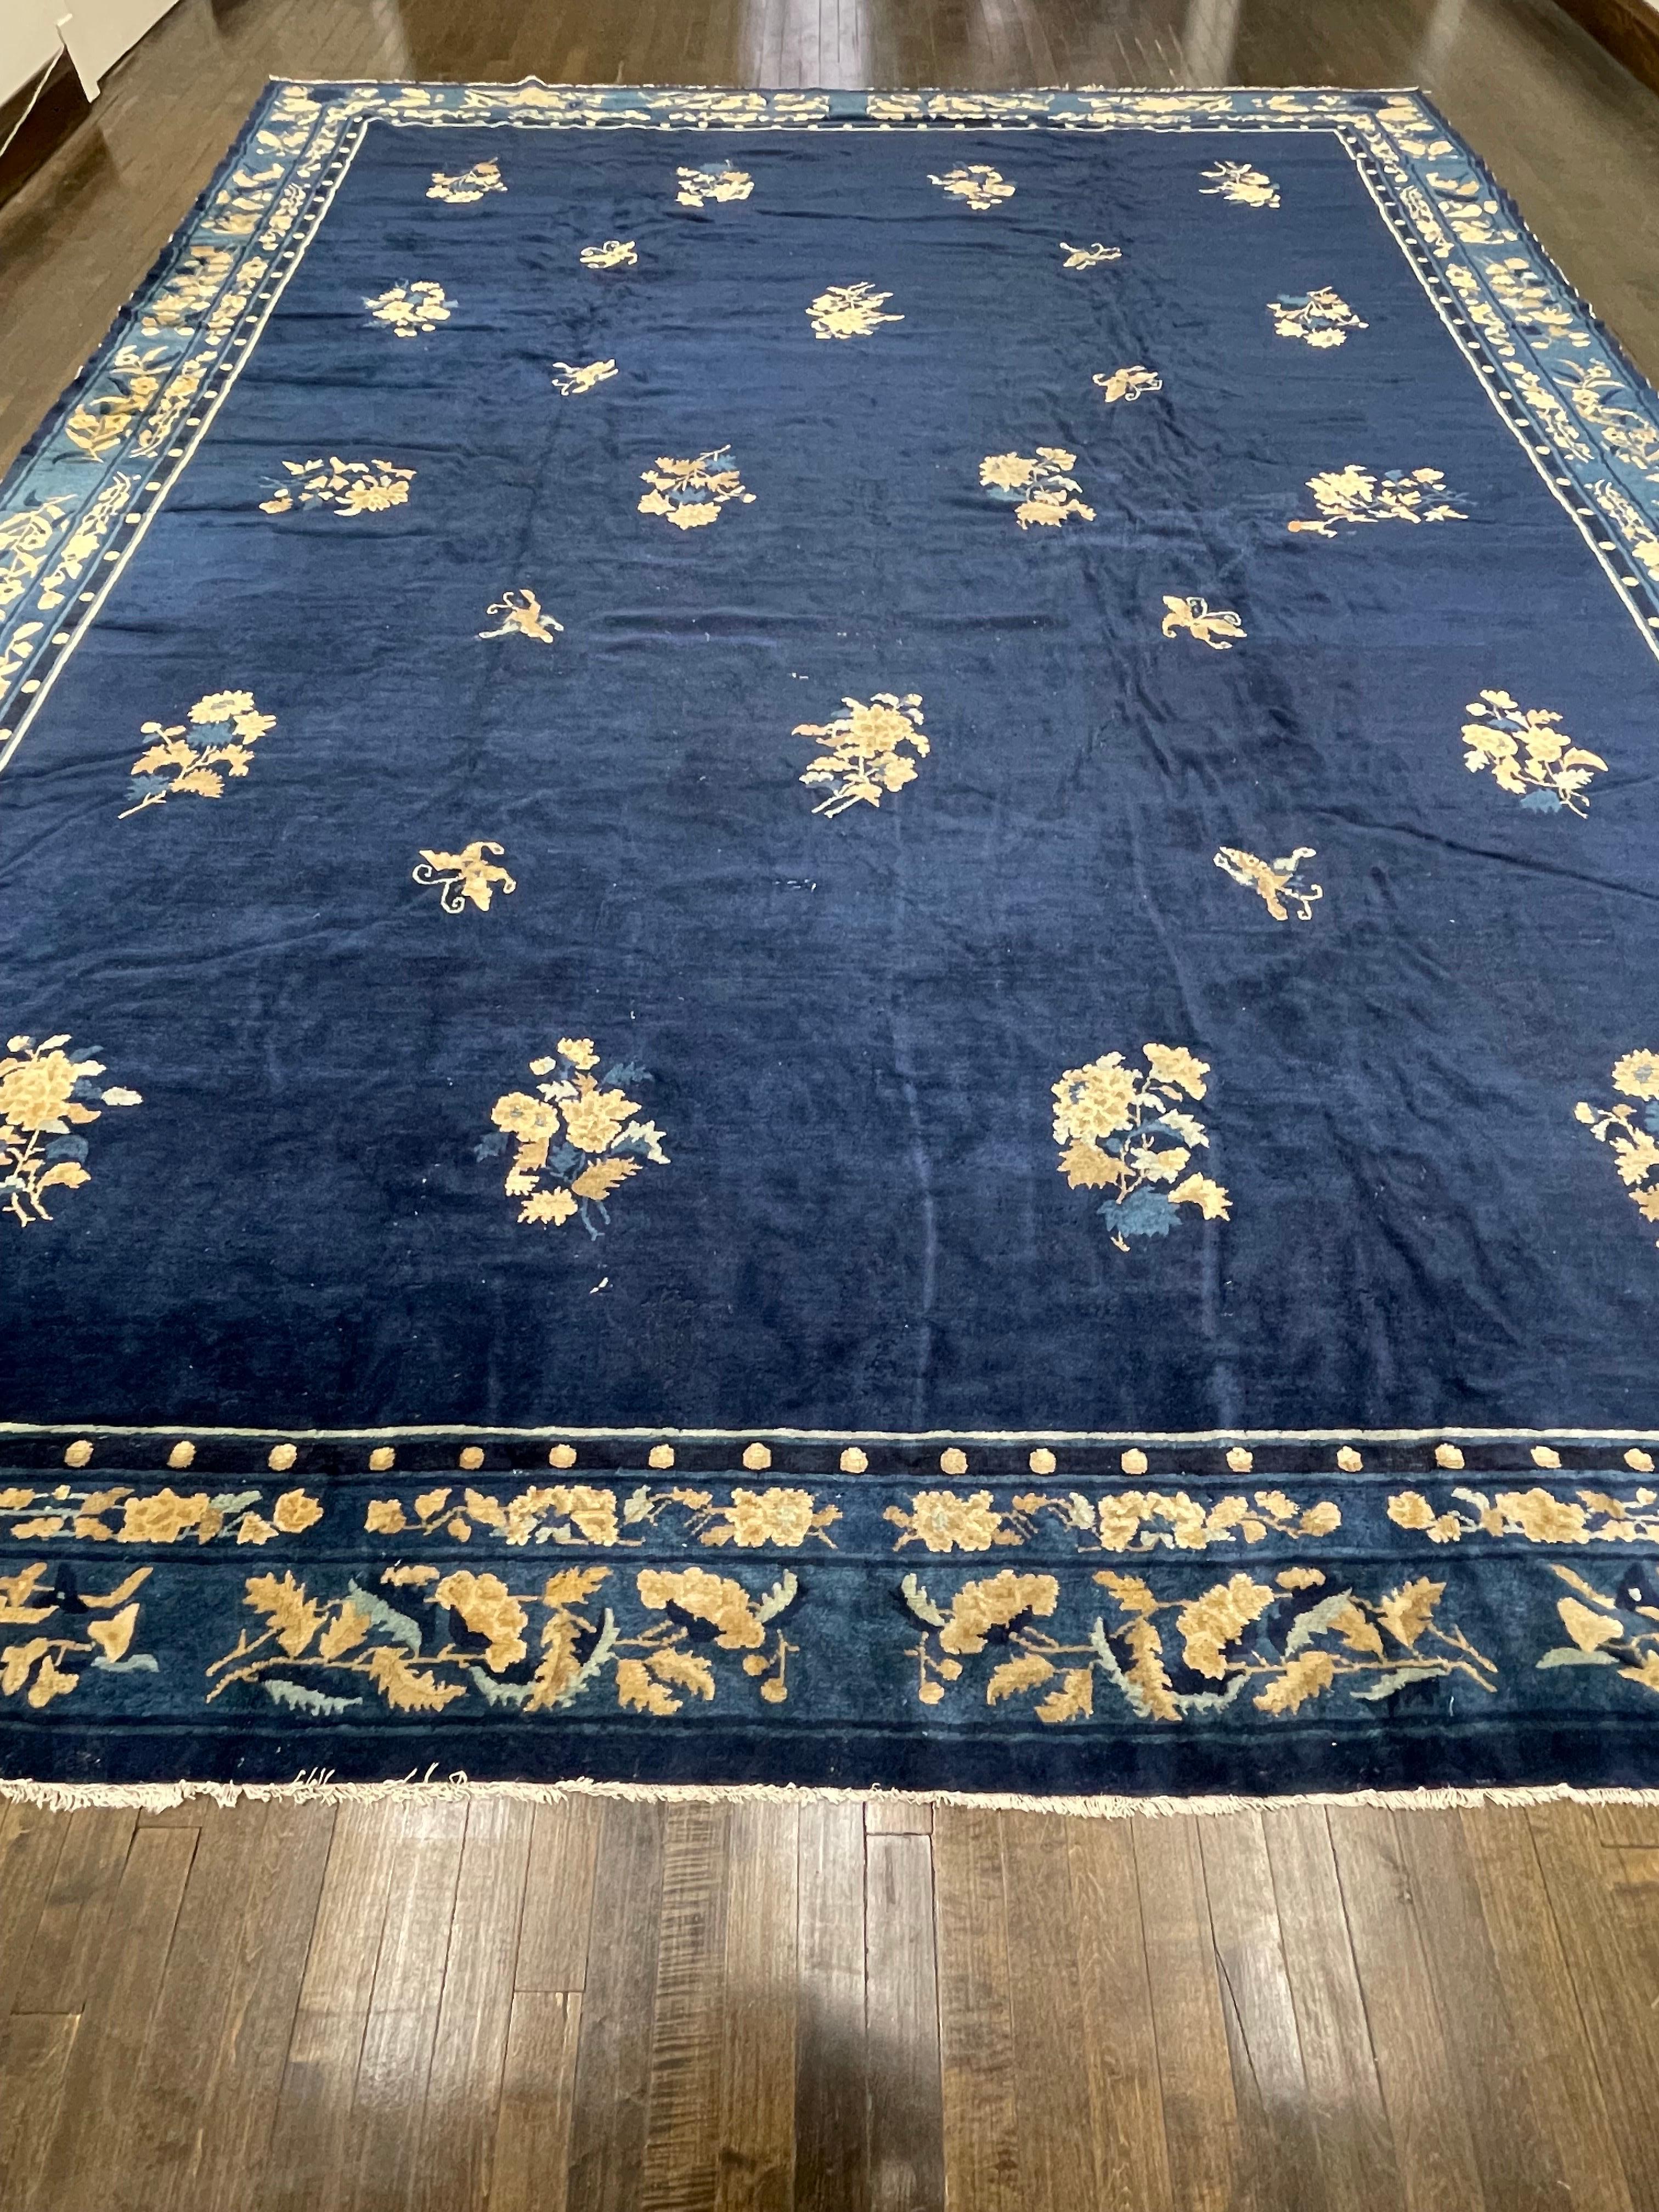 Tapis chinois classique du XIXe siècle au champ peu décoré, ce tapis est tissé à la main avec des nœuds très fins sur un champ bleu indigo rare. Connu sous le nom de chinois de Pékin, ce tapis est encadré d'une bordure spectaculaire.

La laine